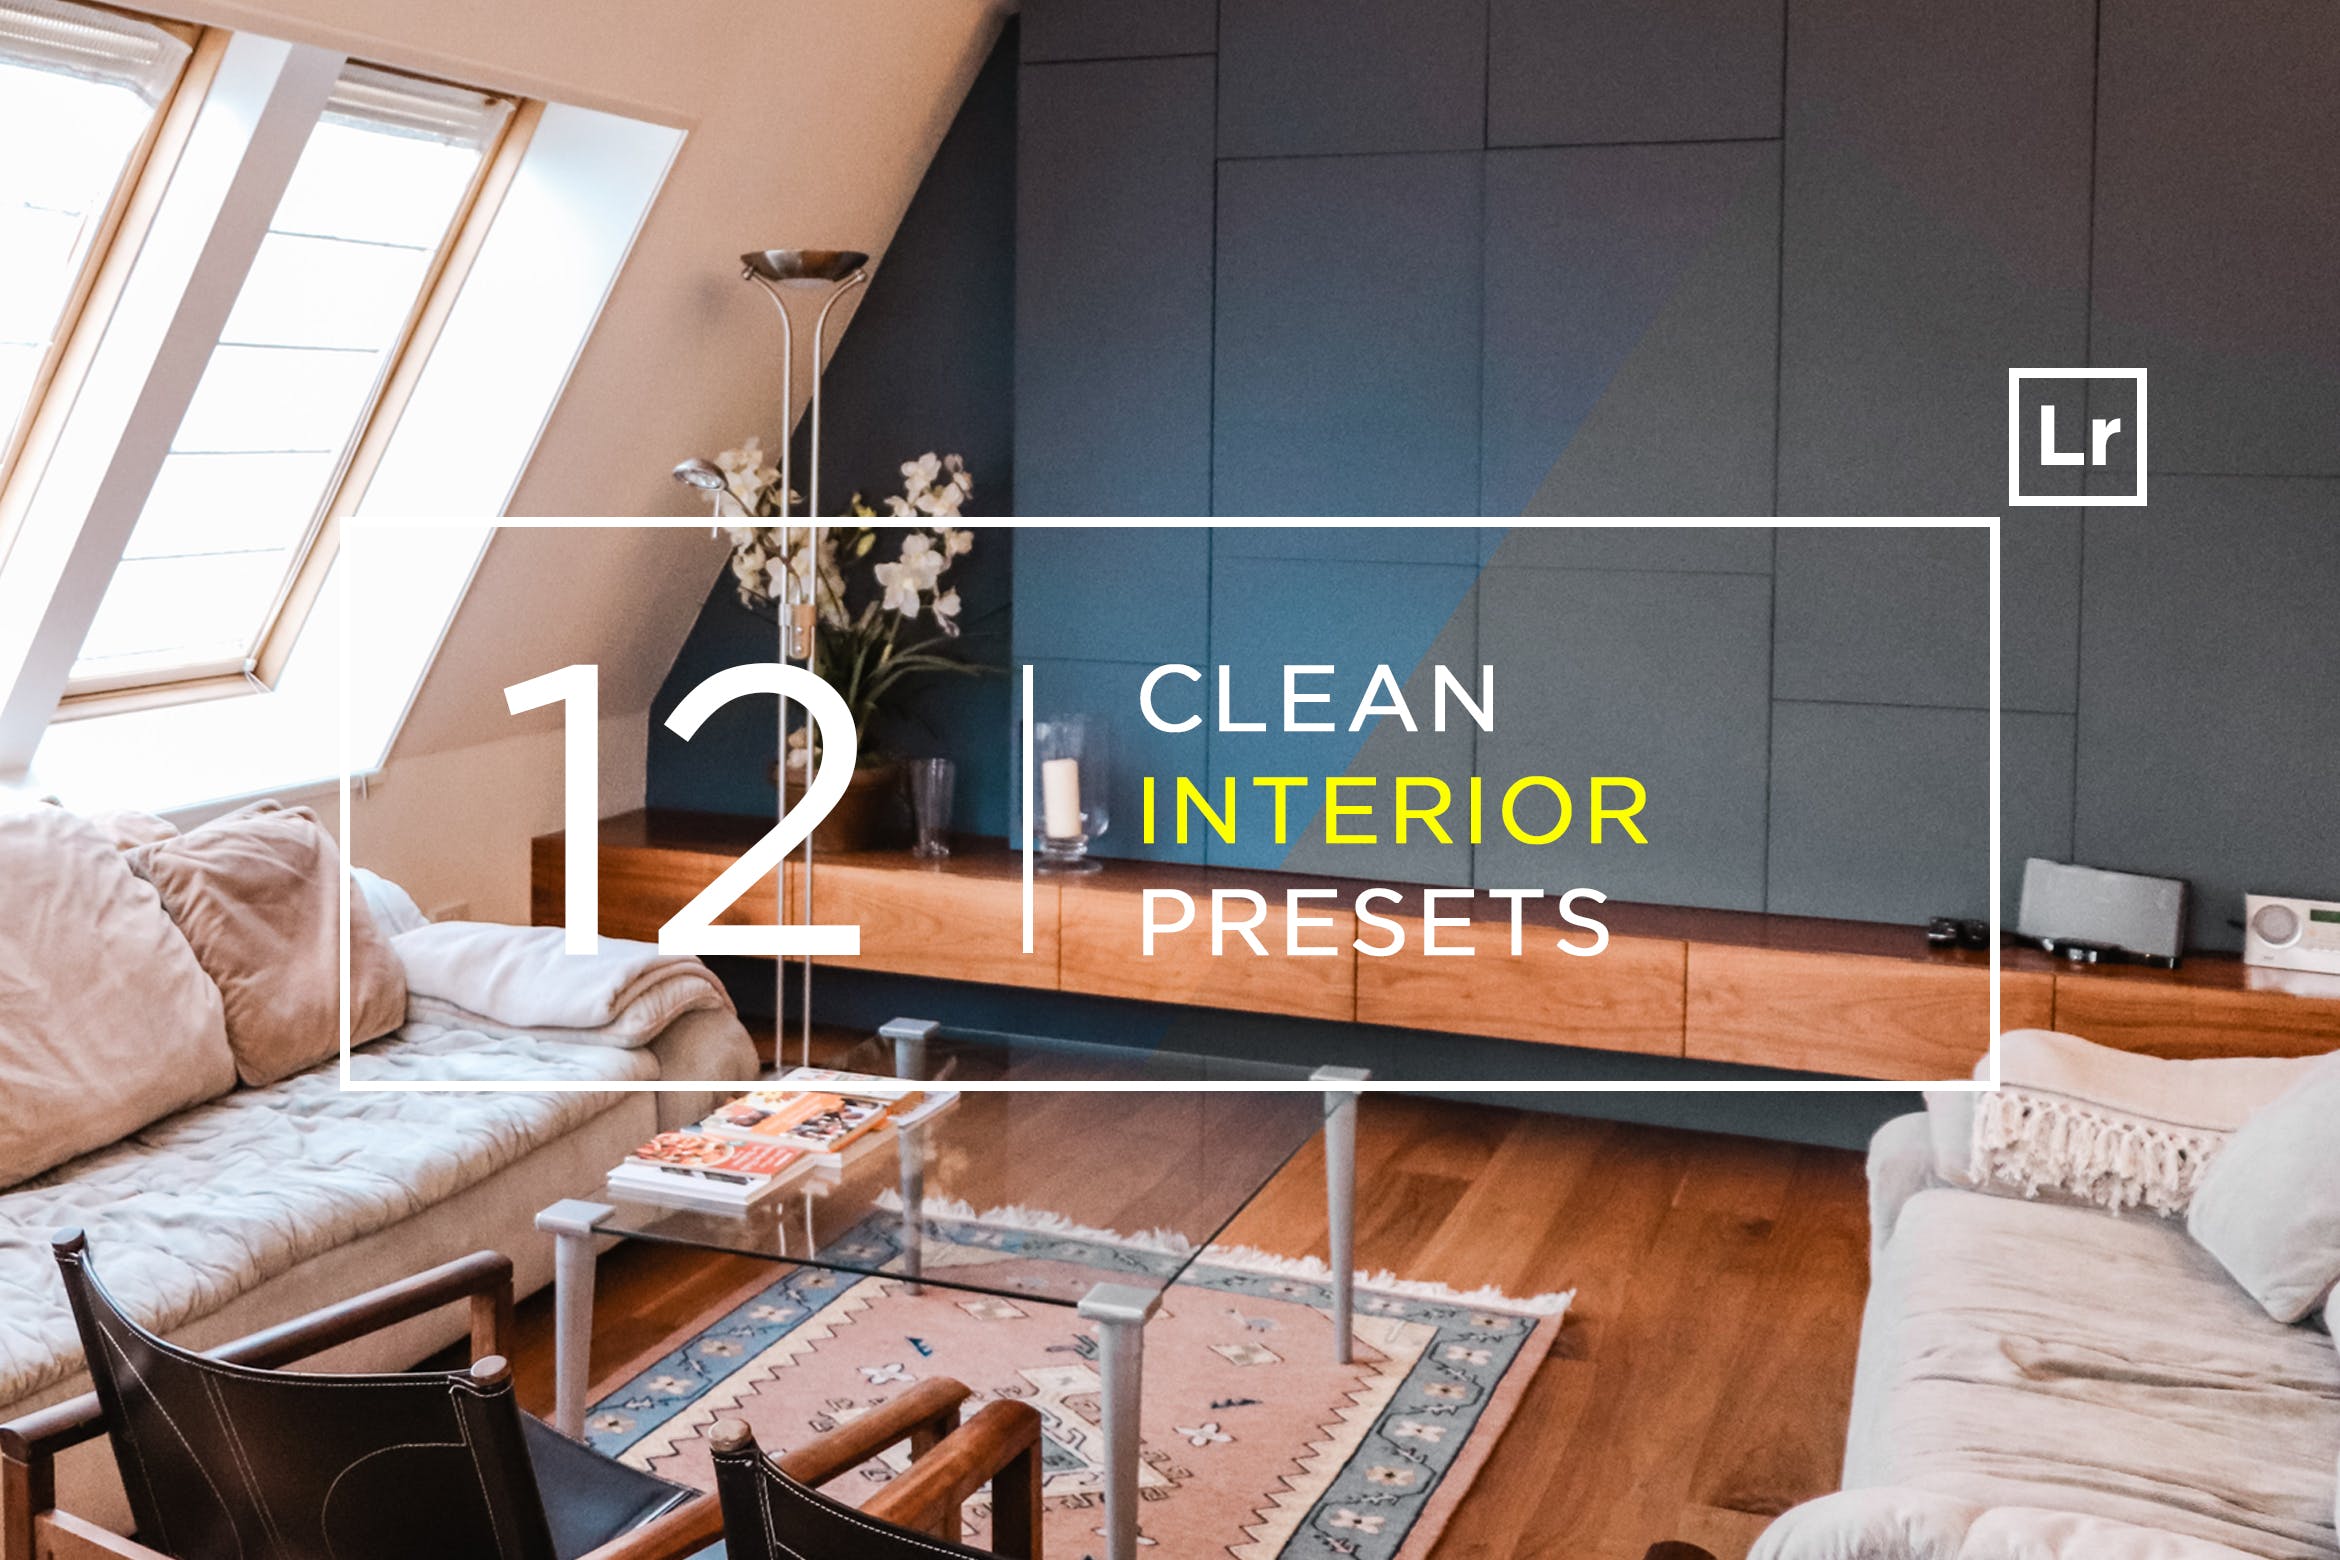 12款室内摄影必备的调色滤镜蚂蚁素材精选LR预设 12 Clean Interior Lightroom Presets插图